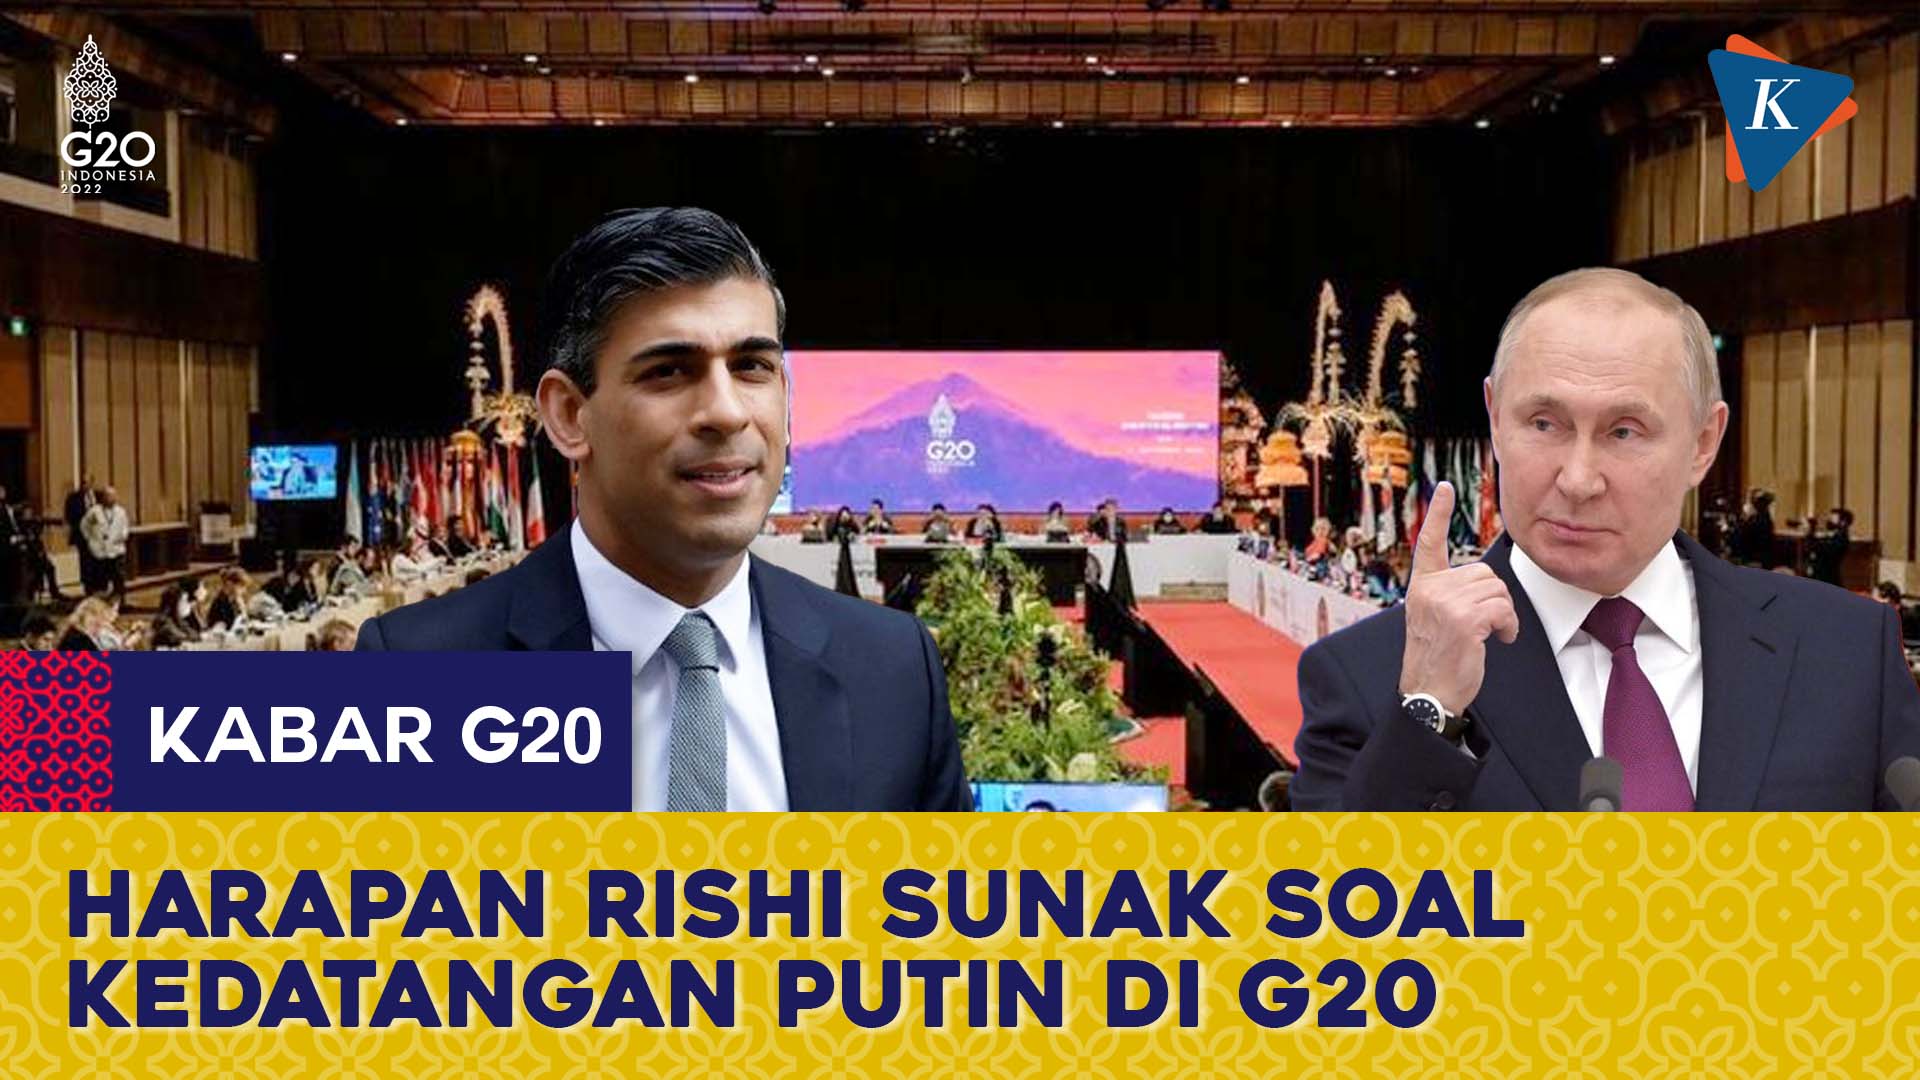 PM Inggris Rishi Sunak: Putin Seharusnya Datang Hadapi Pemimpin G20